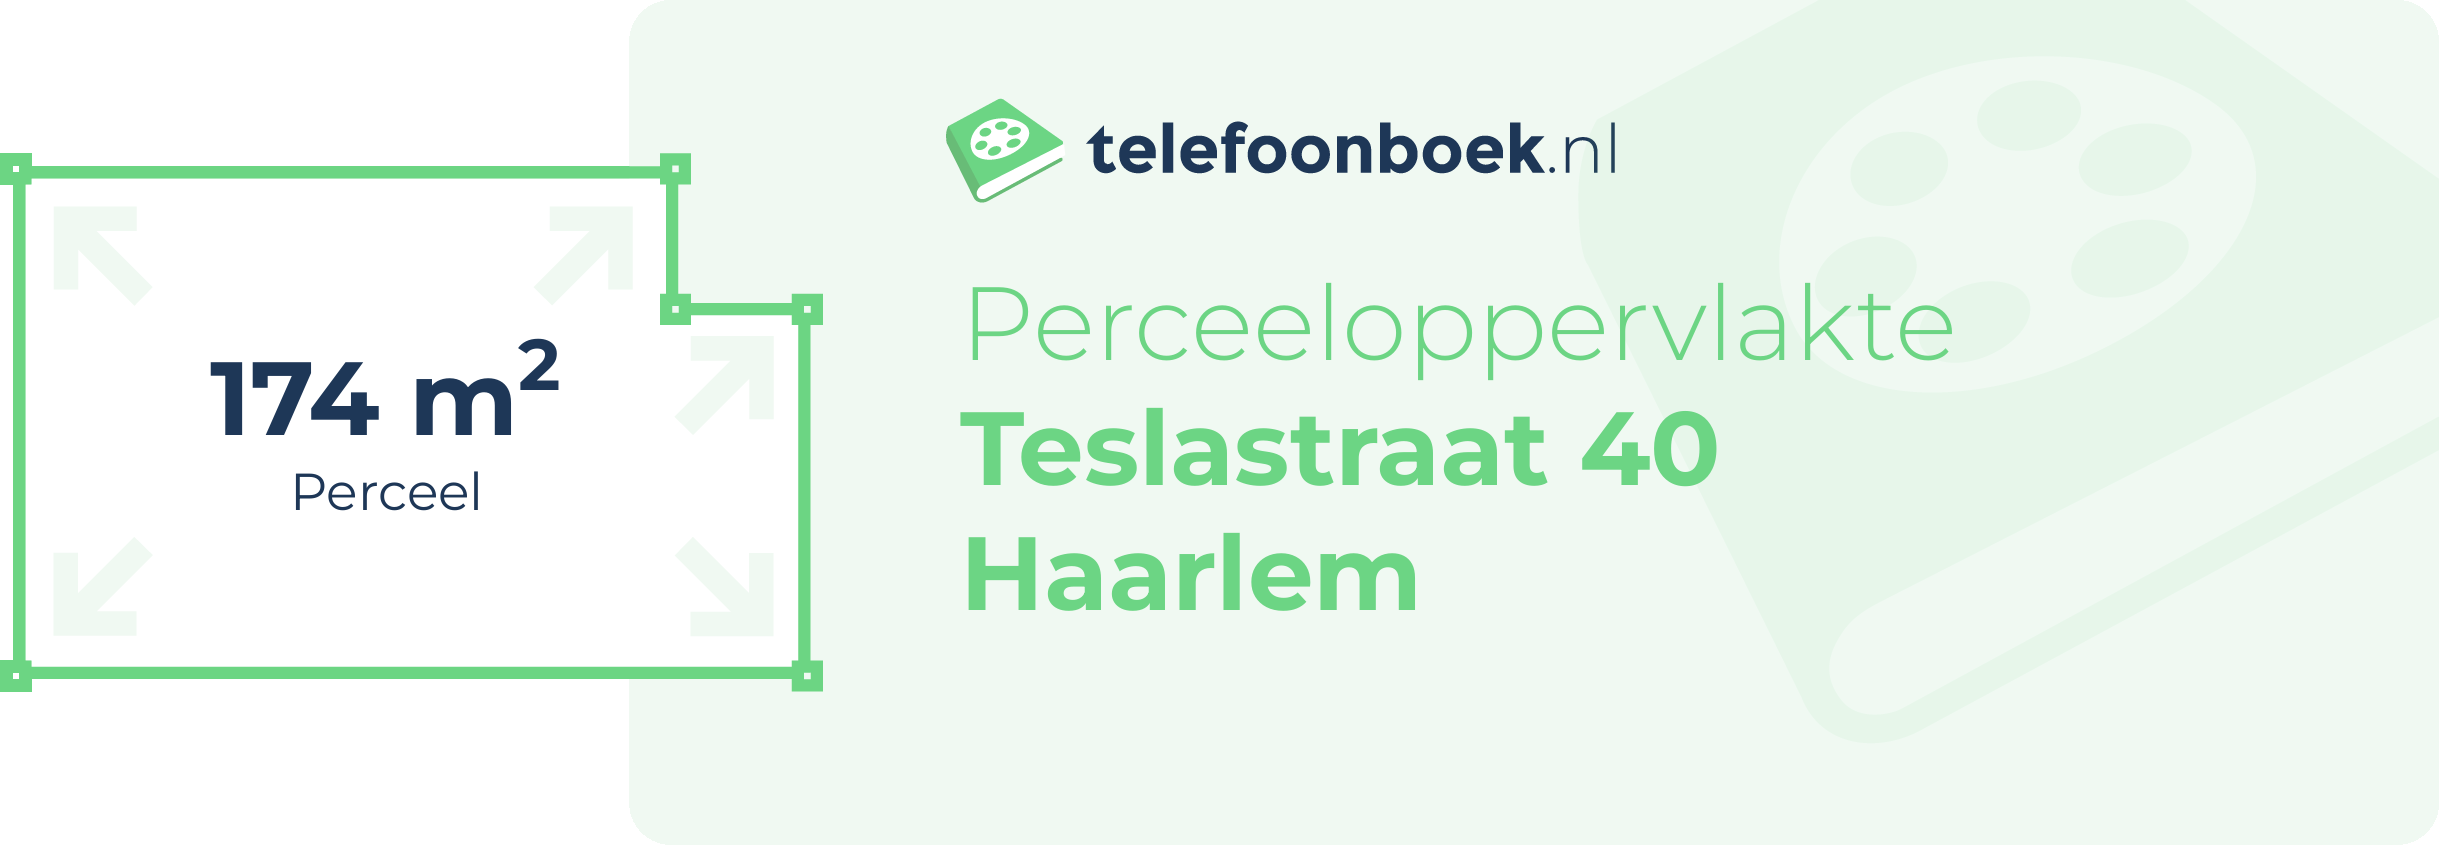 Perceeloppervlakte Teslastraat 40 Haarlem